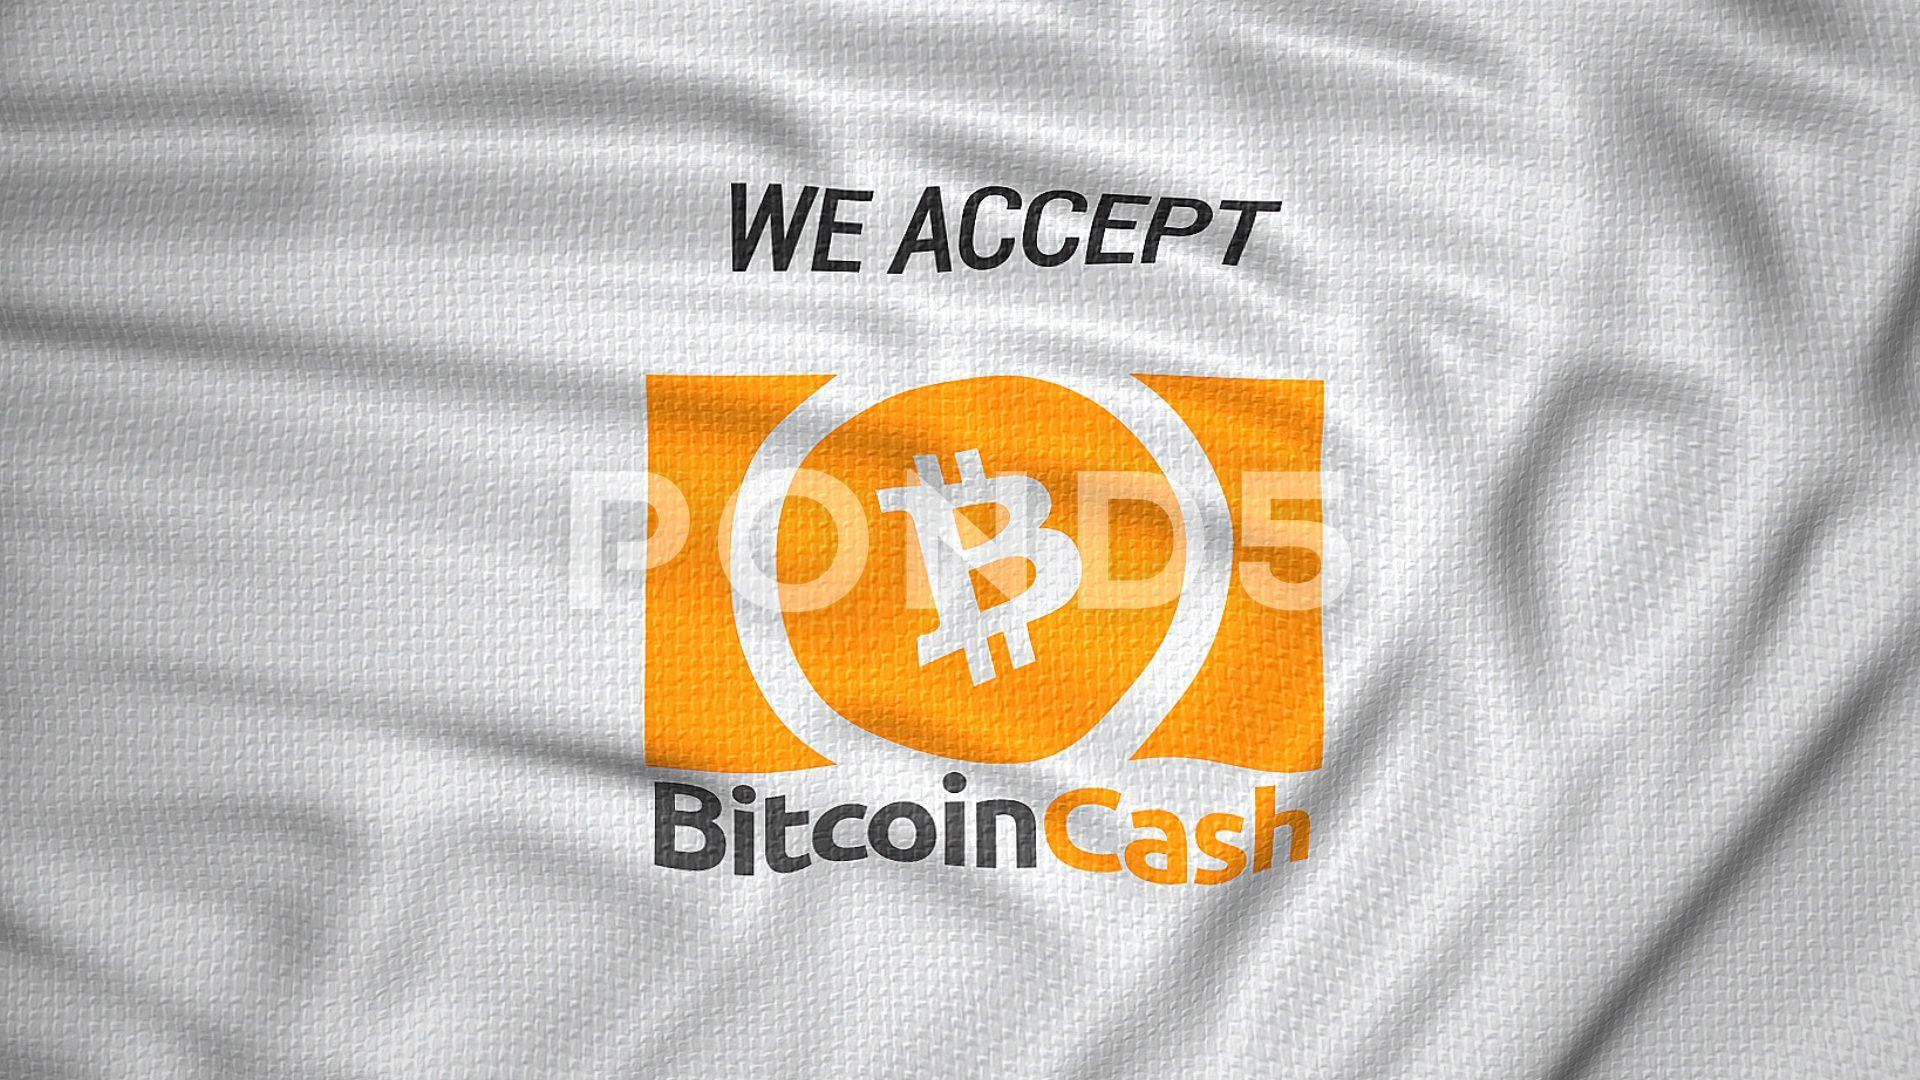 We Accept Cash Logo - We accept bitcoin cash flag logo animated ~ Clip #83461322